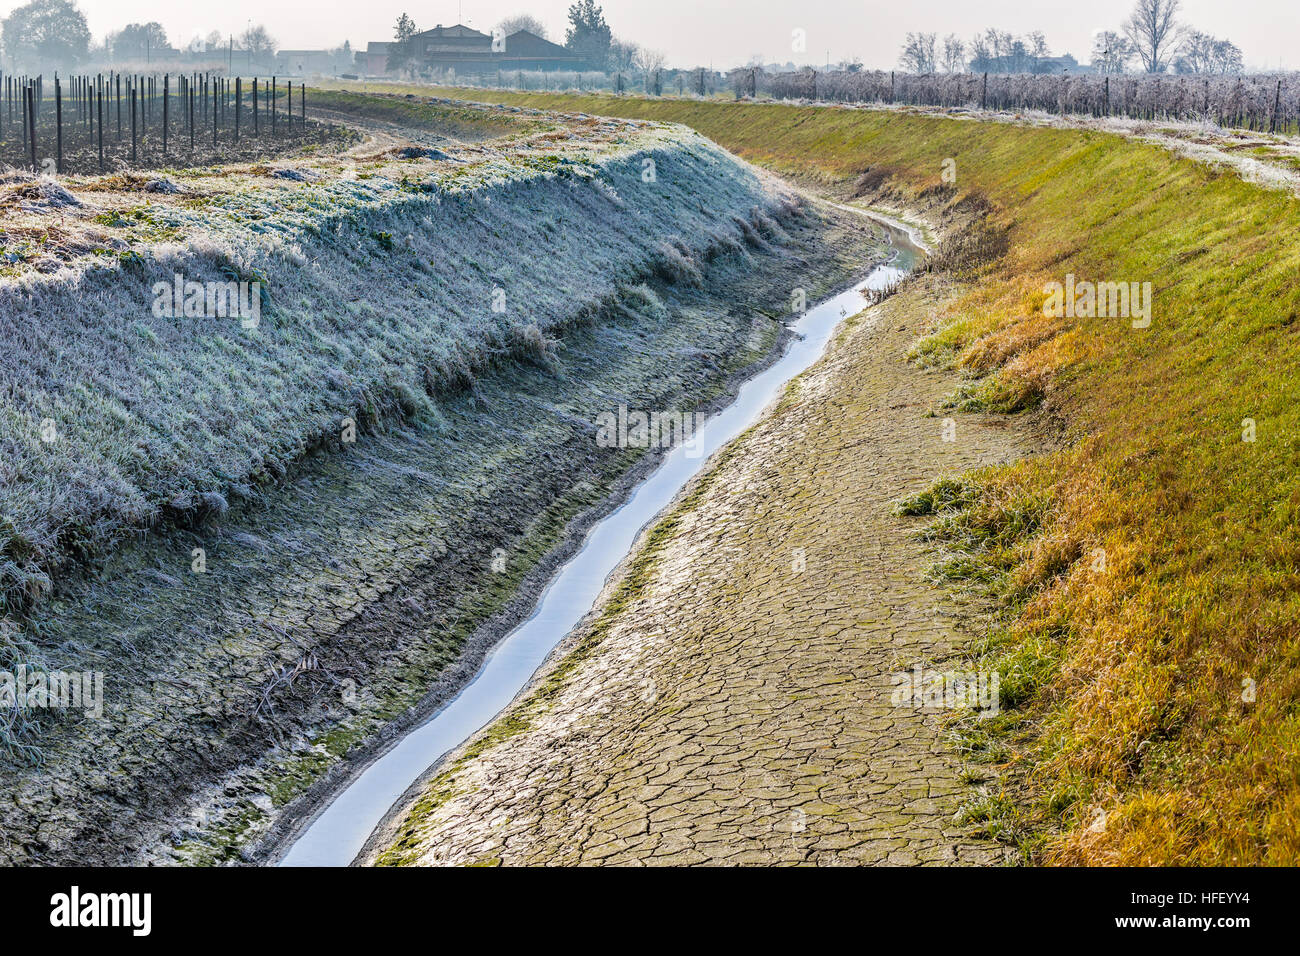 Canal d'irrigation dans les sécheresses en hiver dans la campagne italienne Banque D'Images